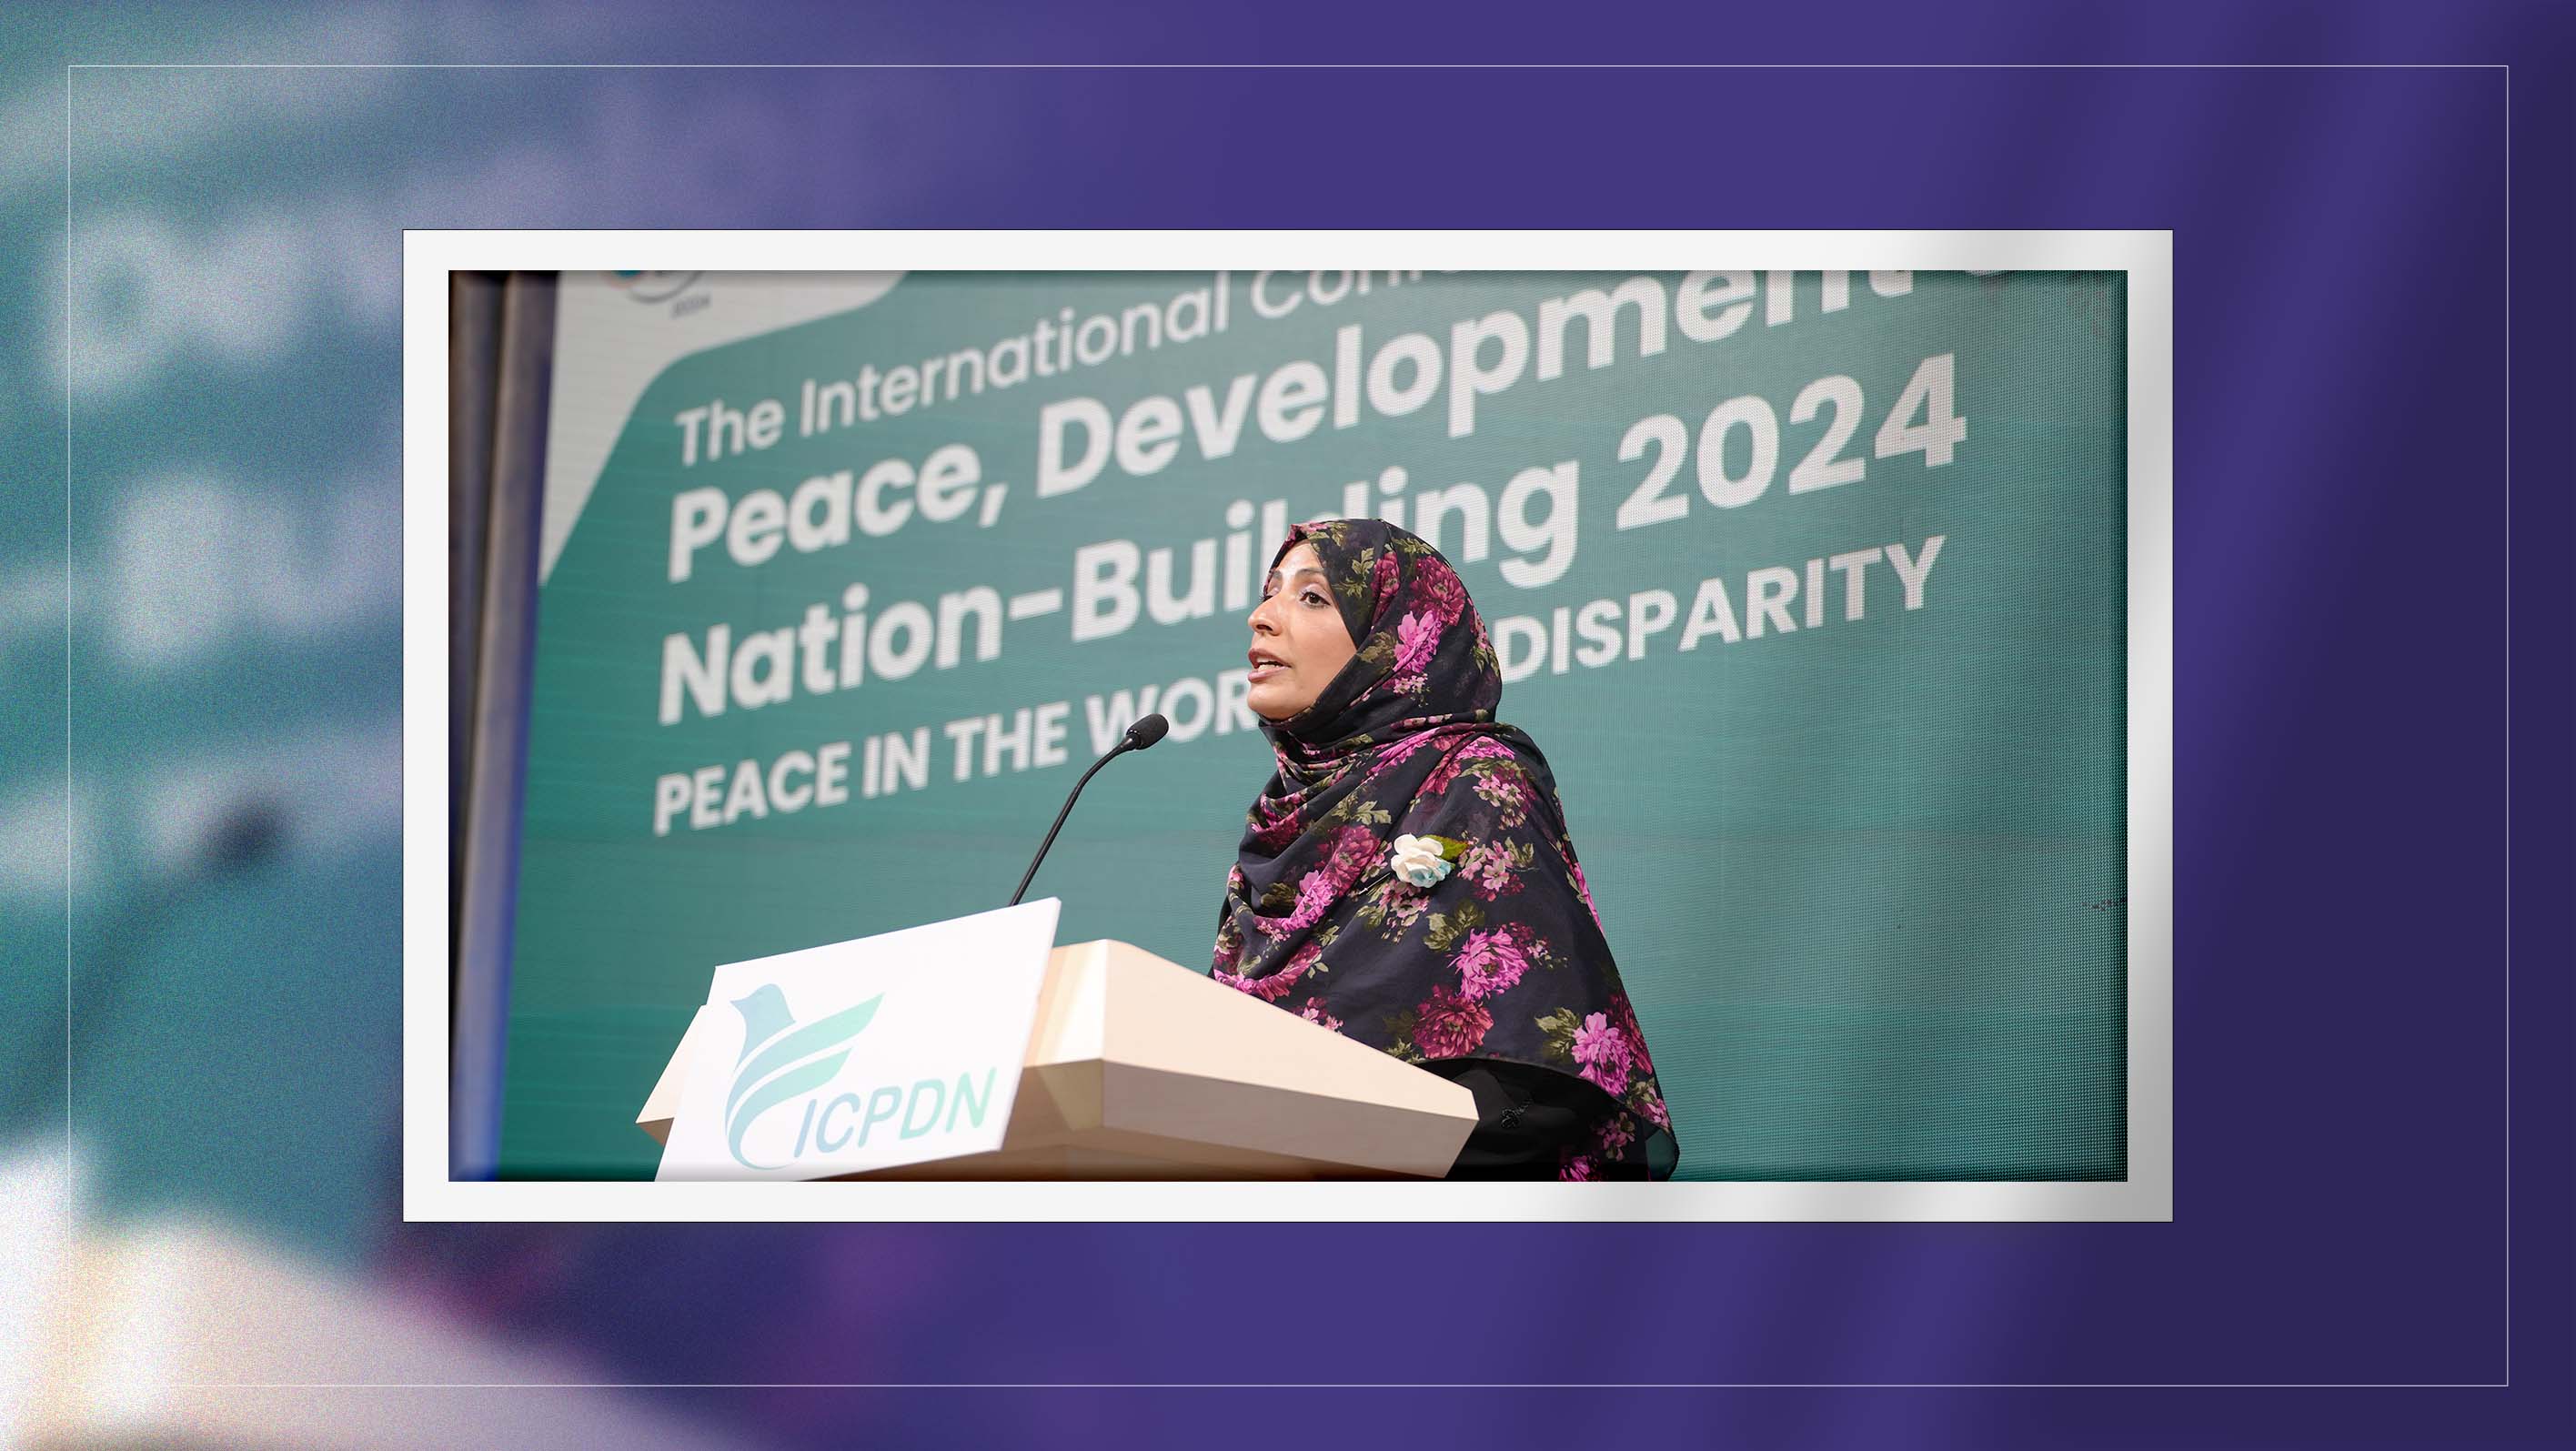 Nobel Laureate Tawakkol Karman calls for global action against disparities at Thailand conference